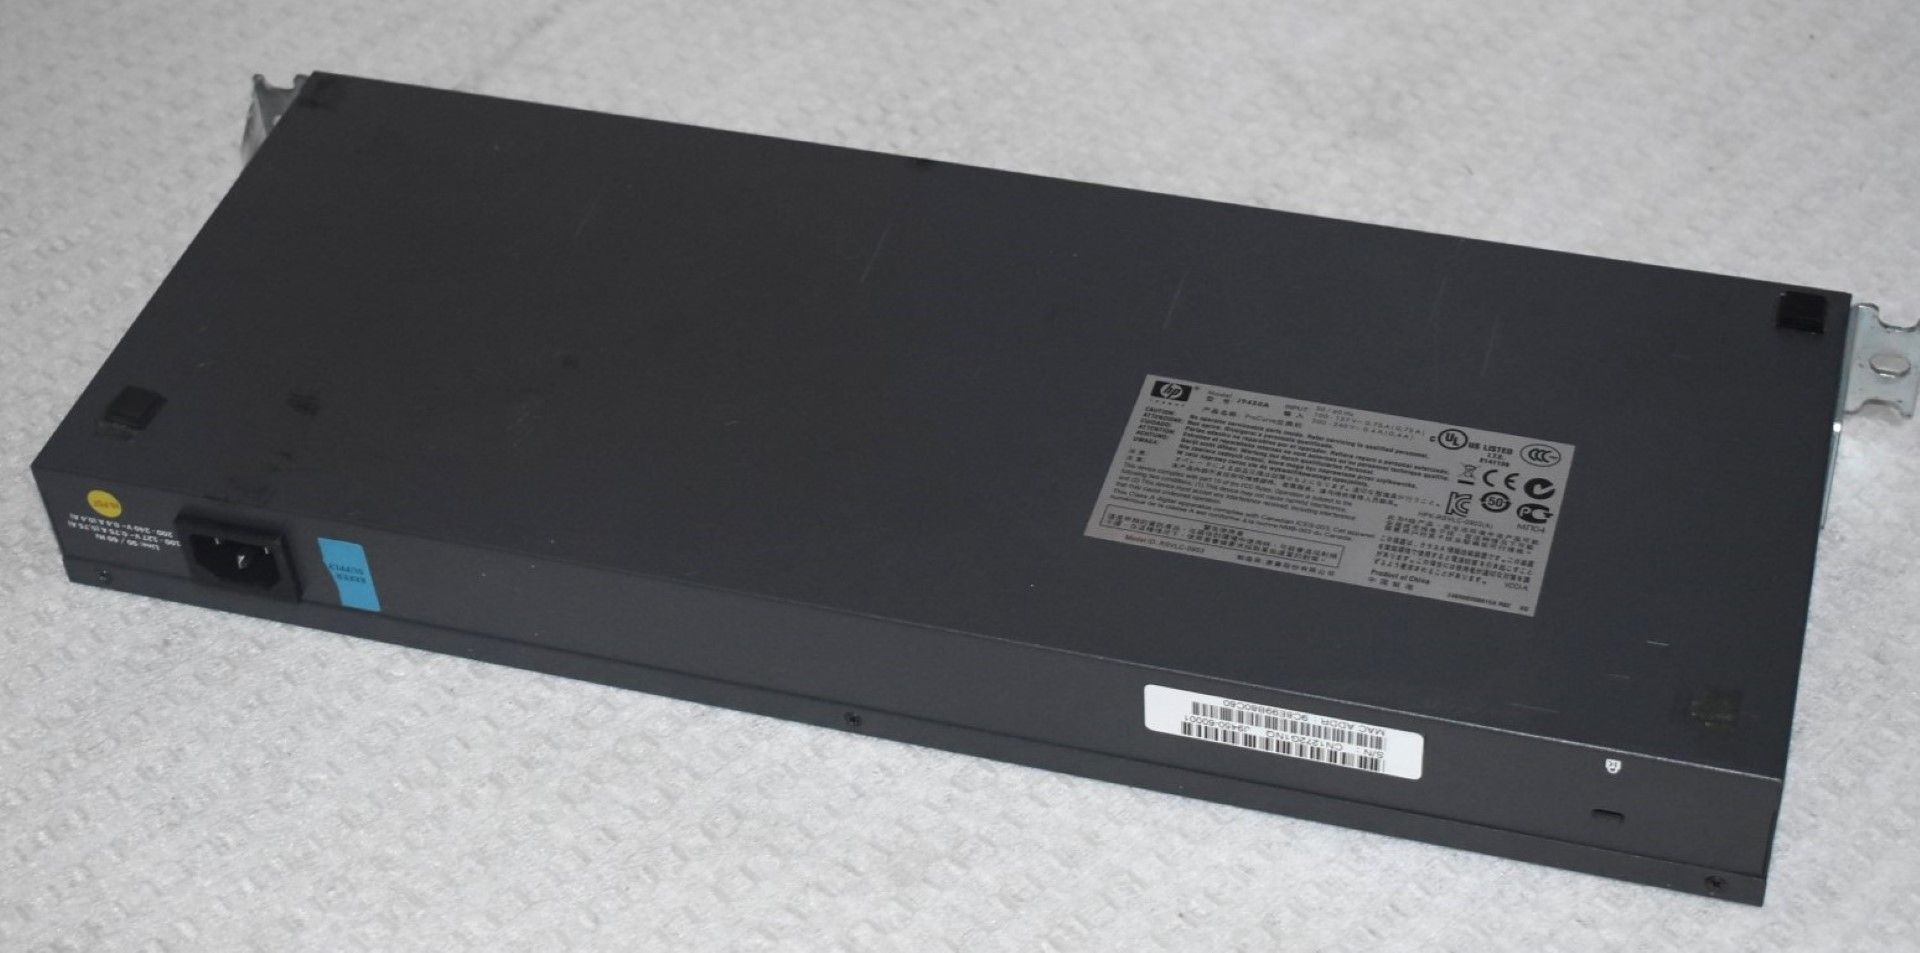 1 x HP Procurve 1810G 24 Port J9450A Switch - Image 6 of 6